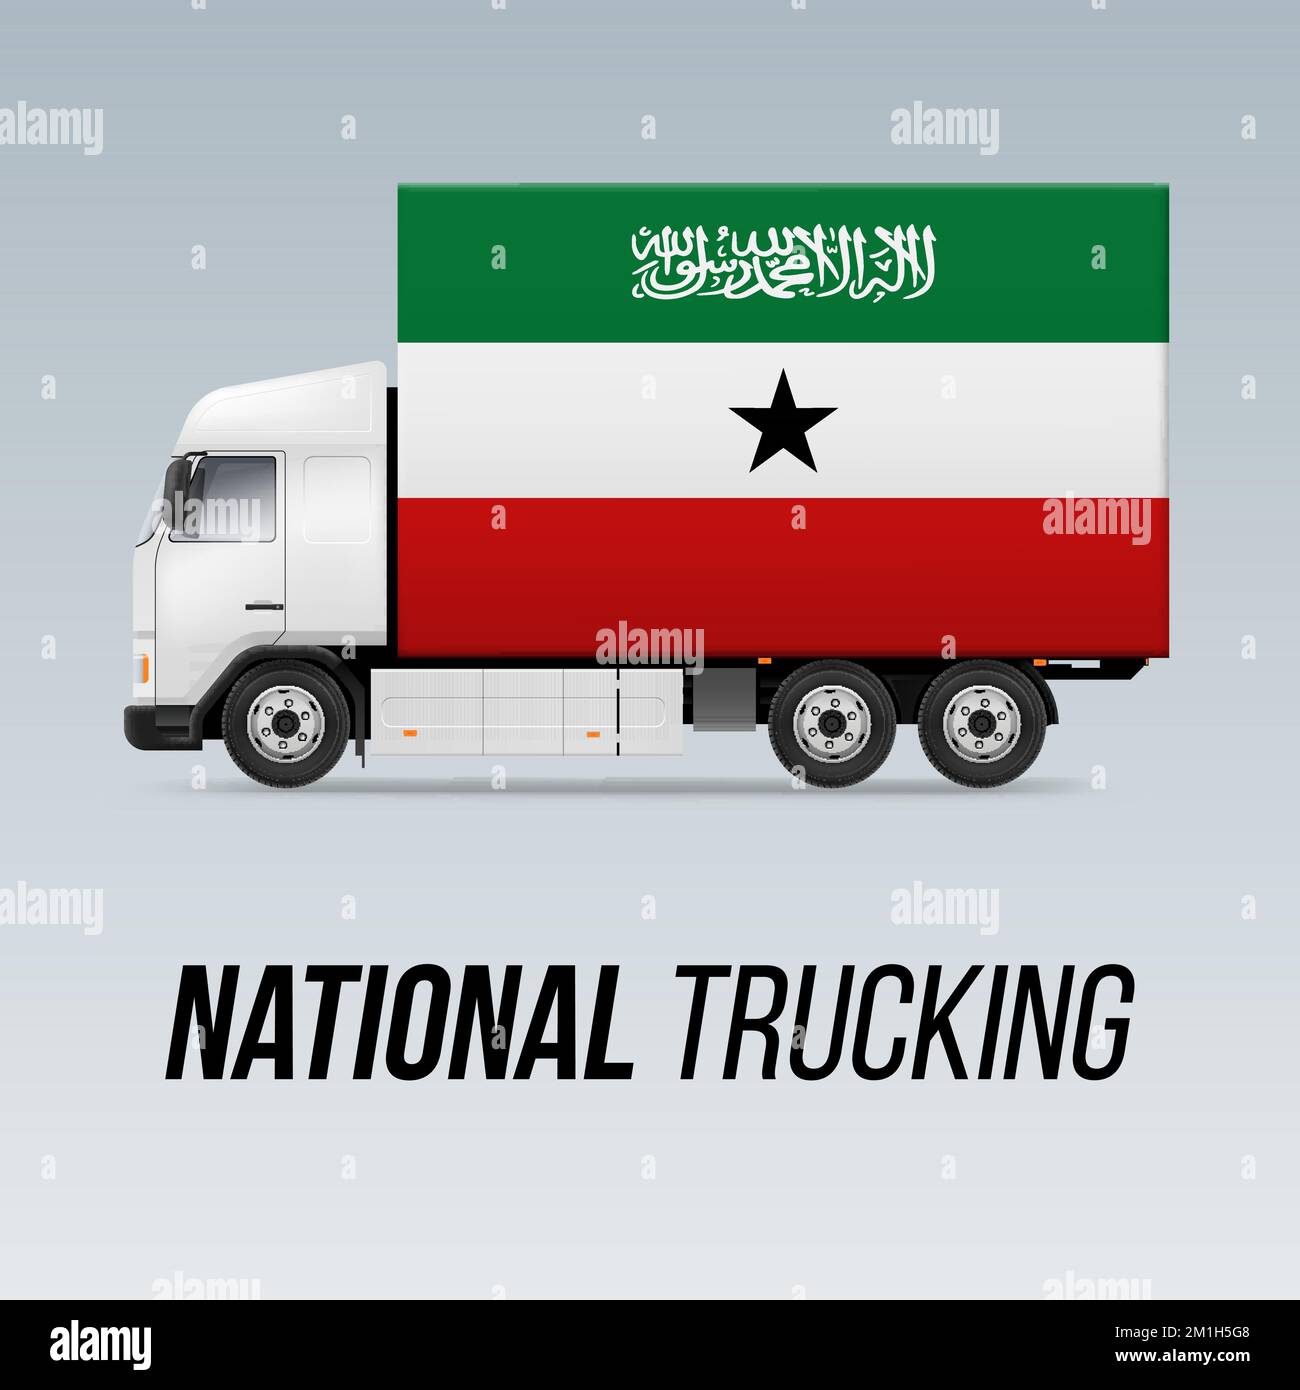 Symbole de camion de livraison nationale avec drapeau du Somaliland. Couleurs de l'icône et du drapeau national Trucking Illustration de Vecteur